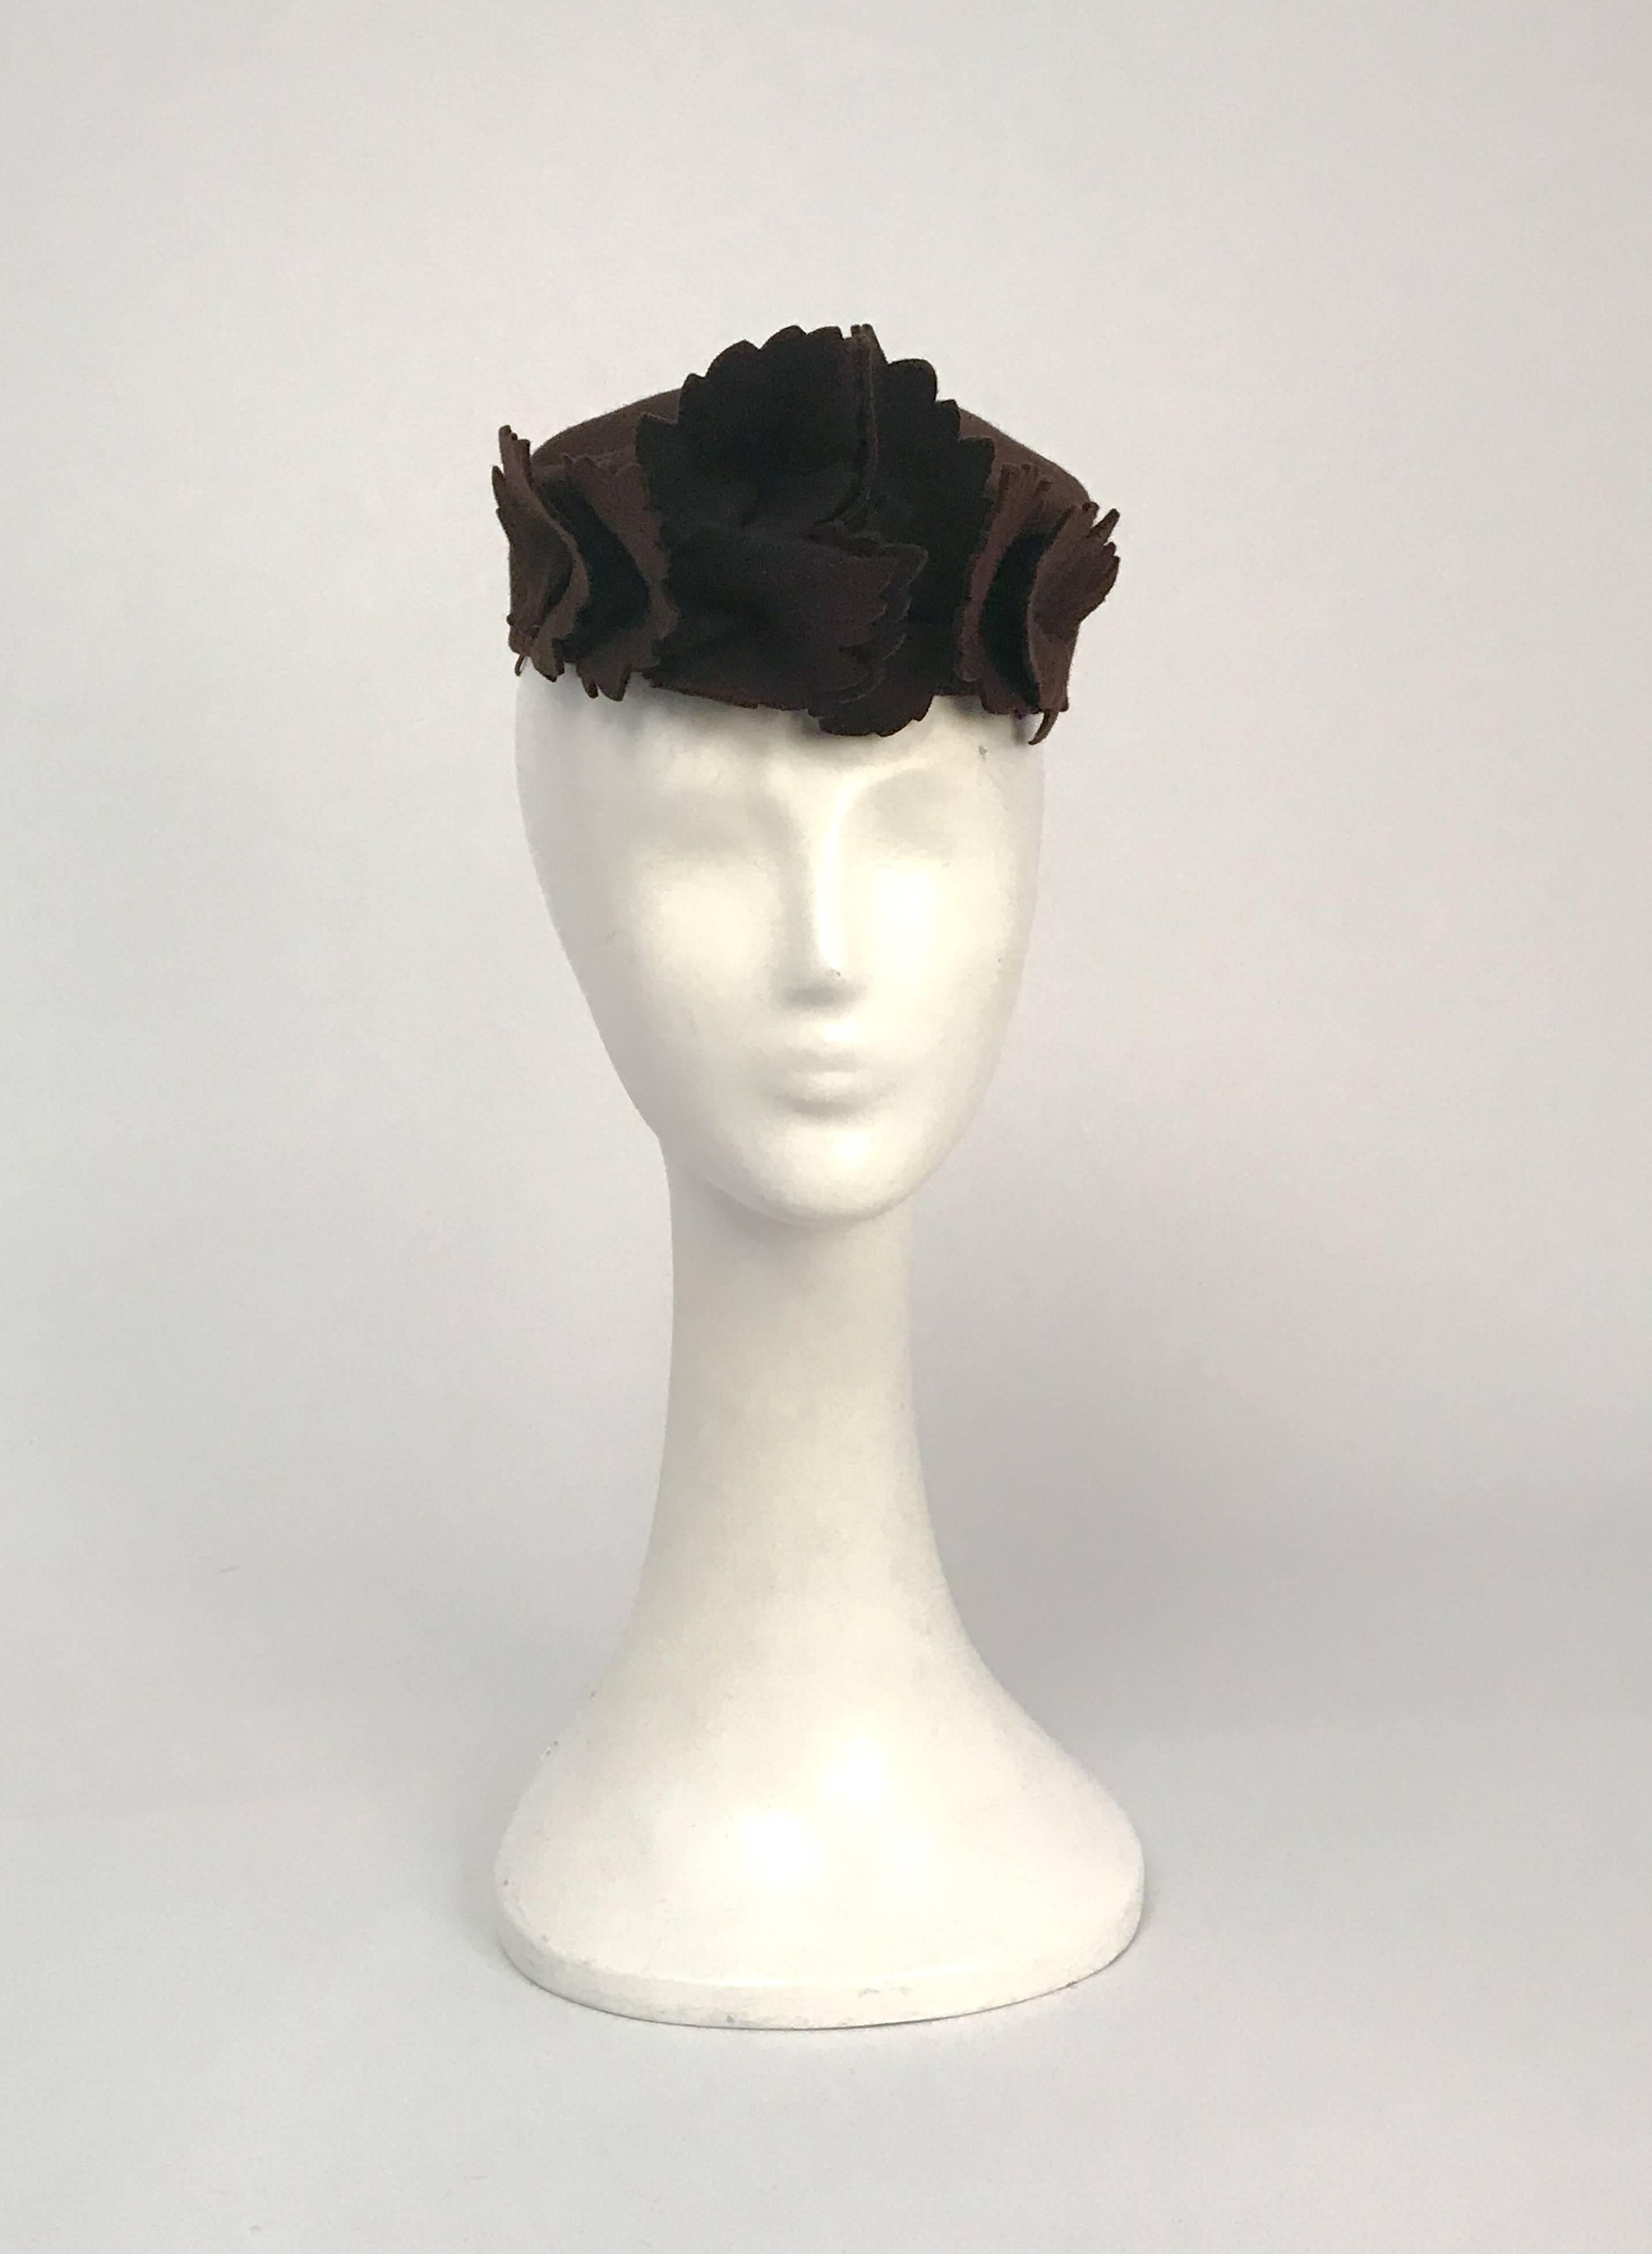 chapeau en laine orné de feuilles marron des années 1930. Chapeau en feutre brun avec des embellissements de feuilles brunes. Bande élastique pour fixer le chapeau sur la tête. circonférence de 22 pouces.